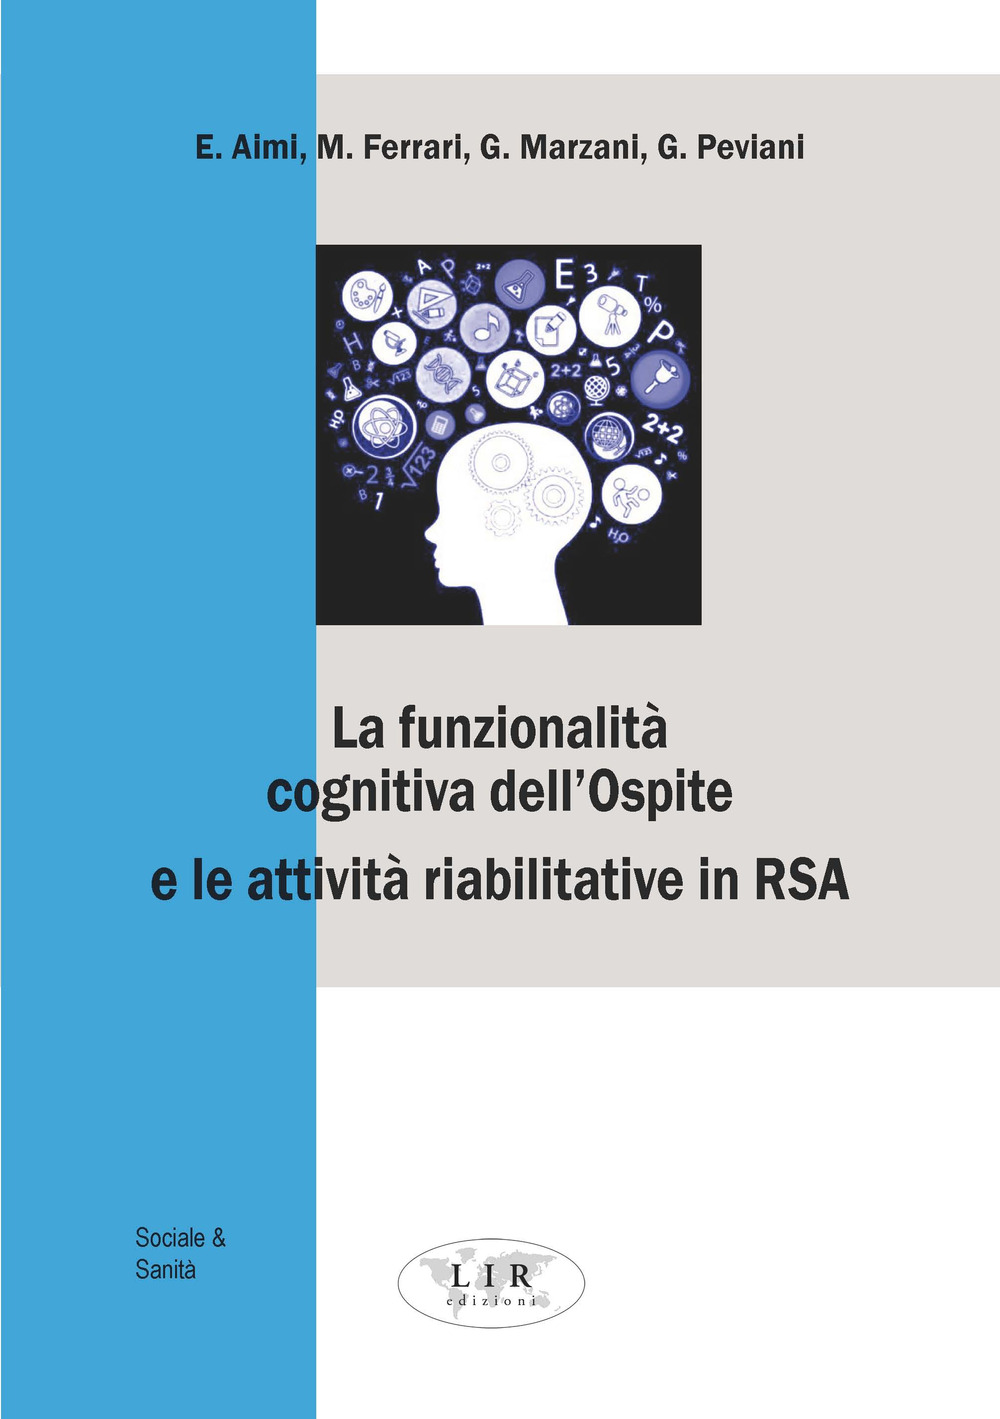 La funzionalità cognitiva dell'ospite e le attività riabilitative in RSA